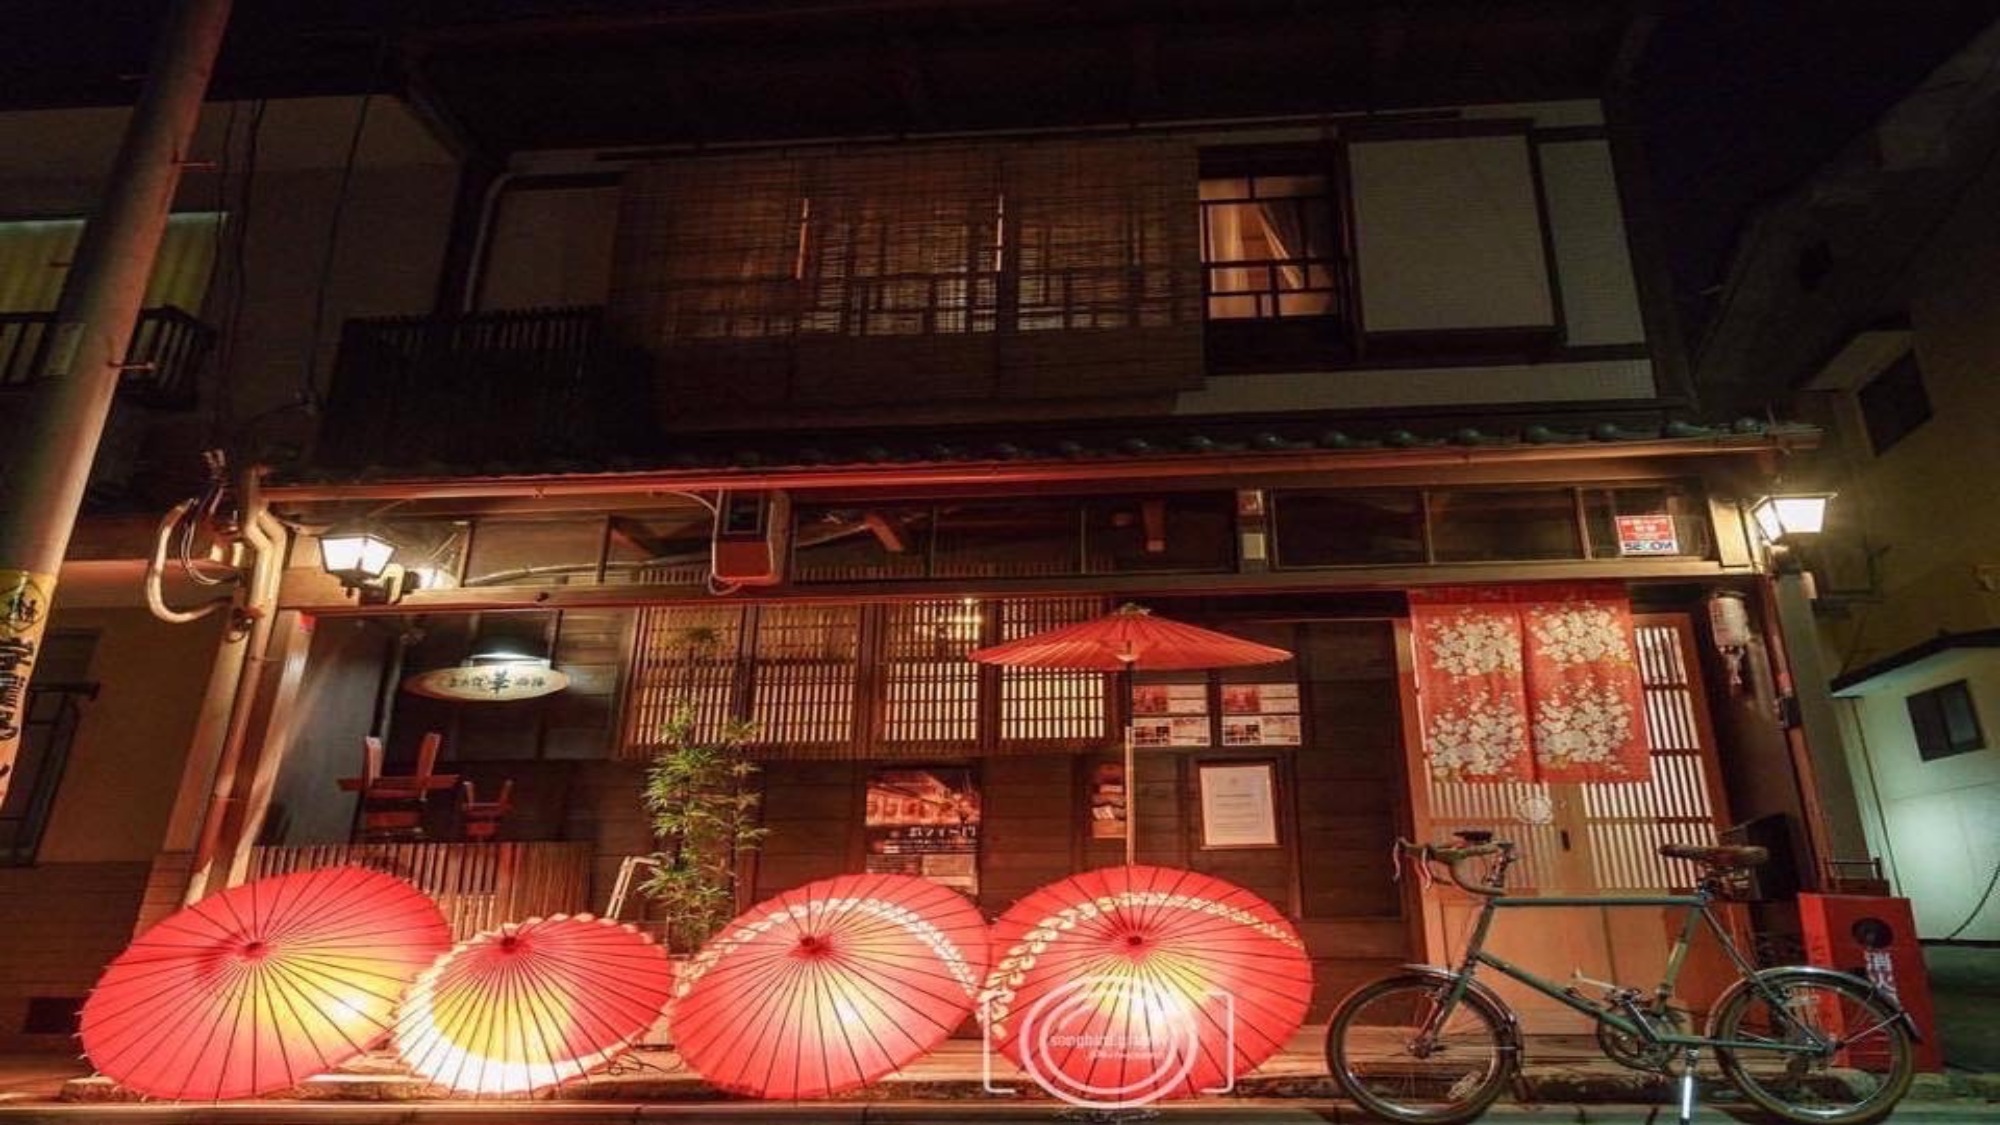 ・【外観】夜は美しい伝統工芸の傘が彩る、京の町ならではの外観